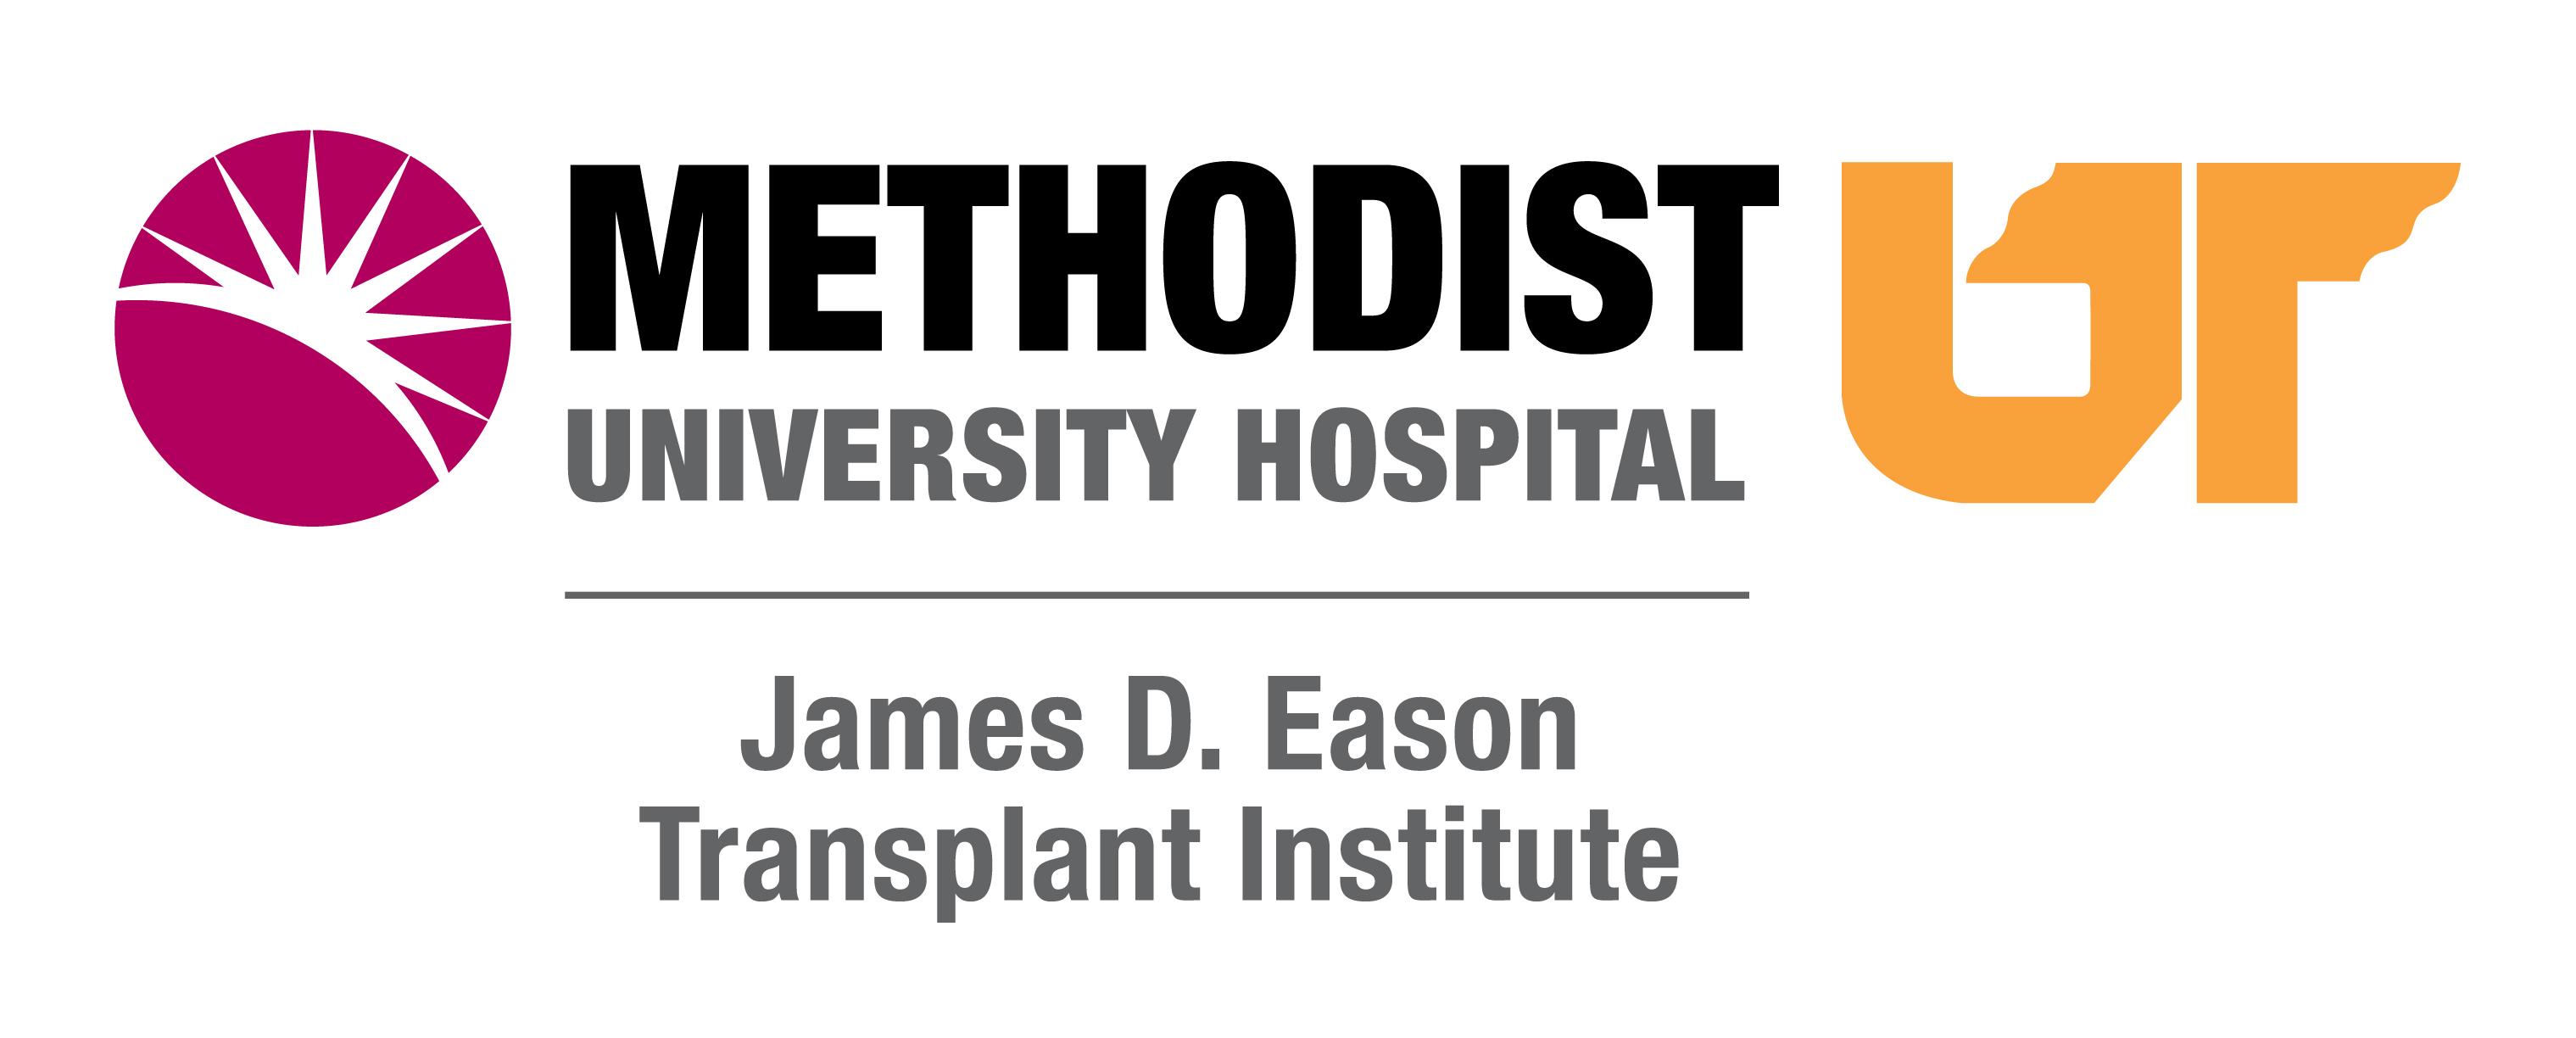 Methodist UT University Hospital James D Eason Transplant Institute